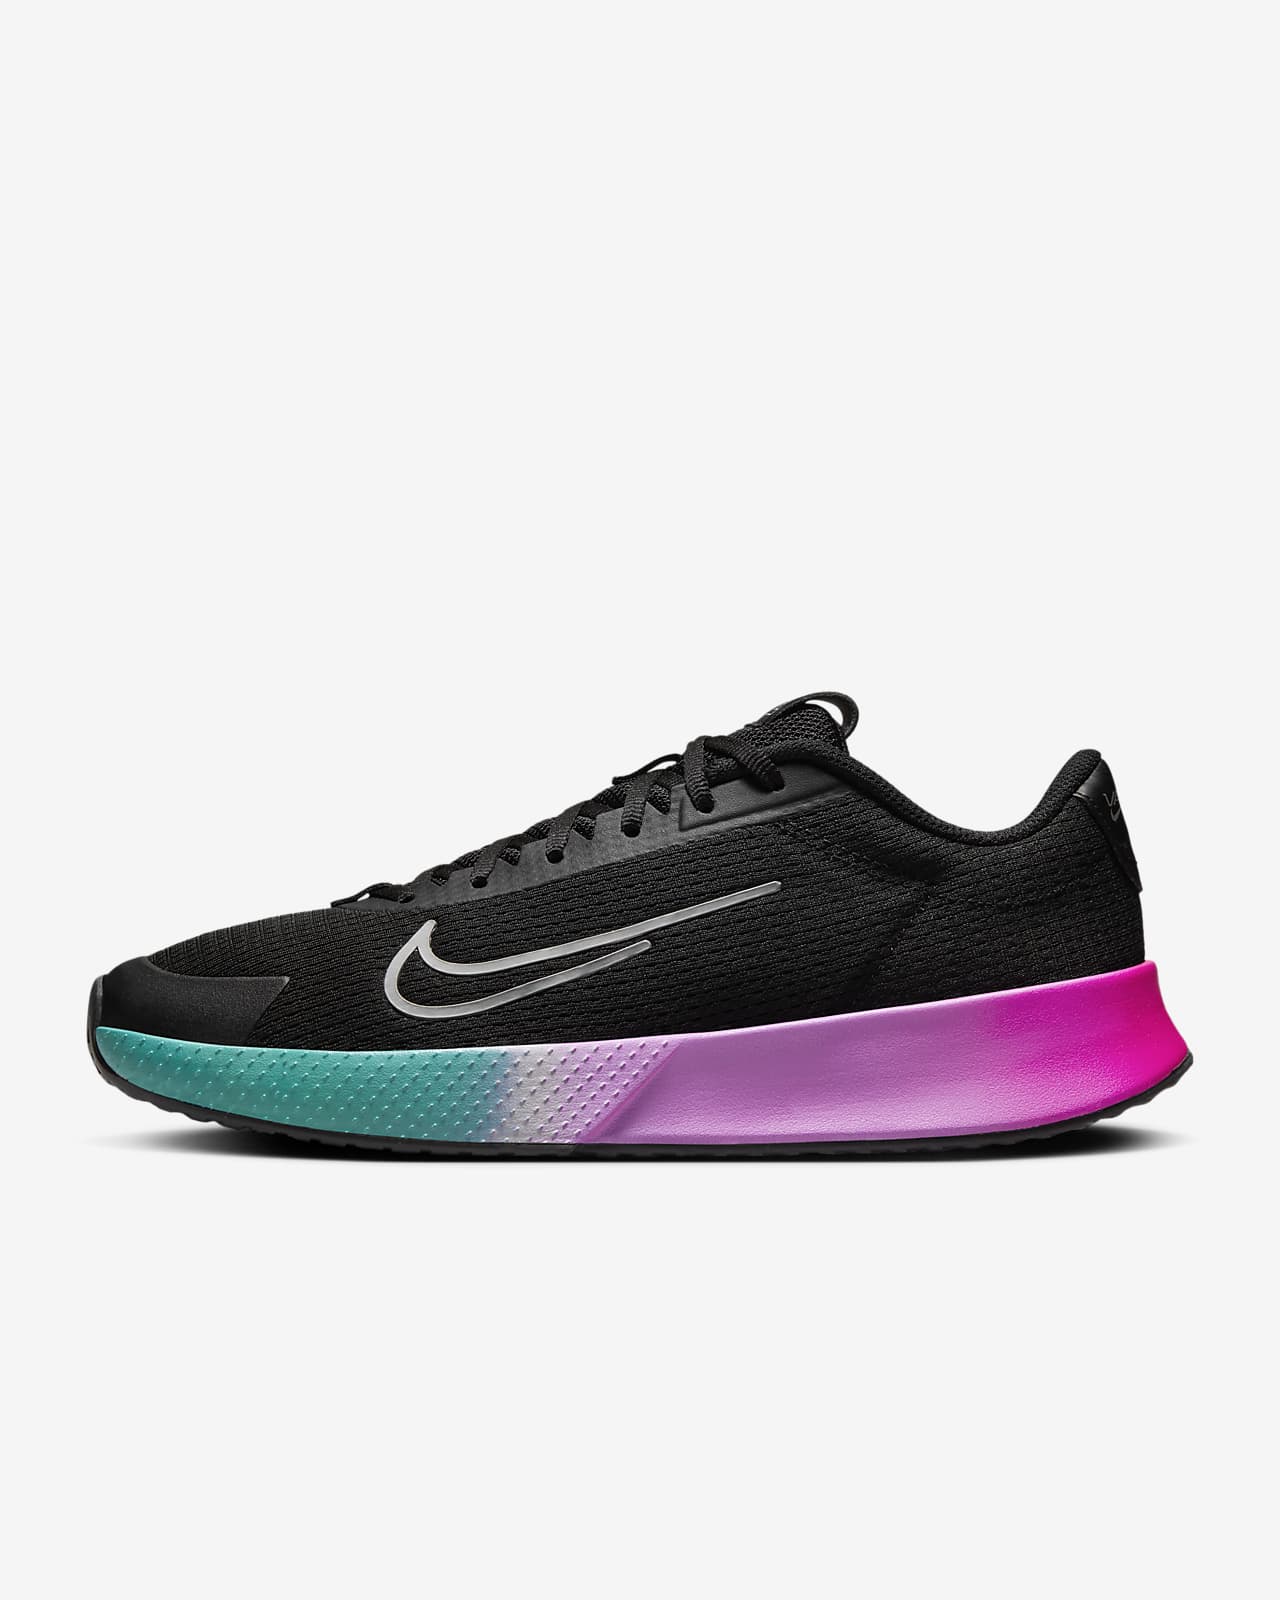 NikeCourt Vapor Lite 2 Premium Men's Hard Court Tennis Shoes